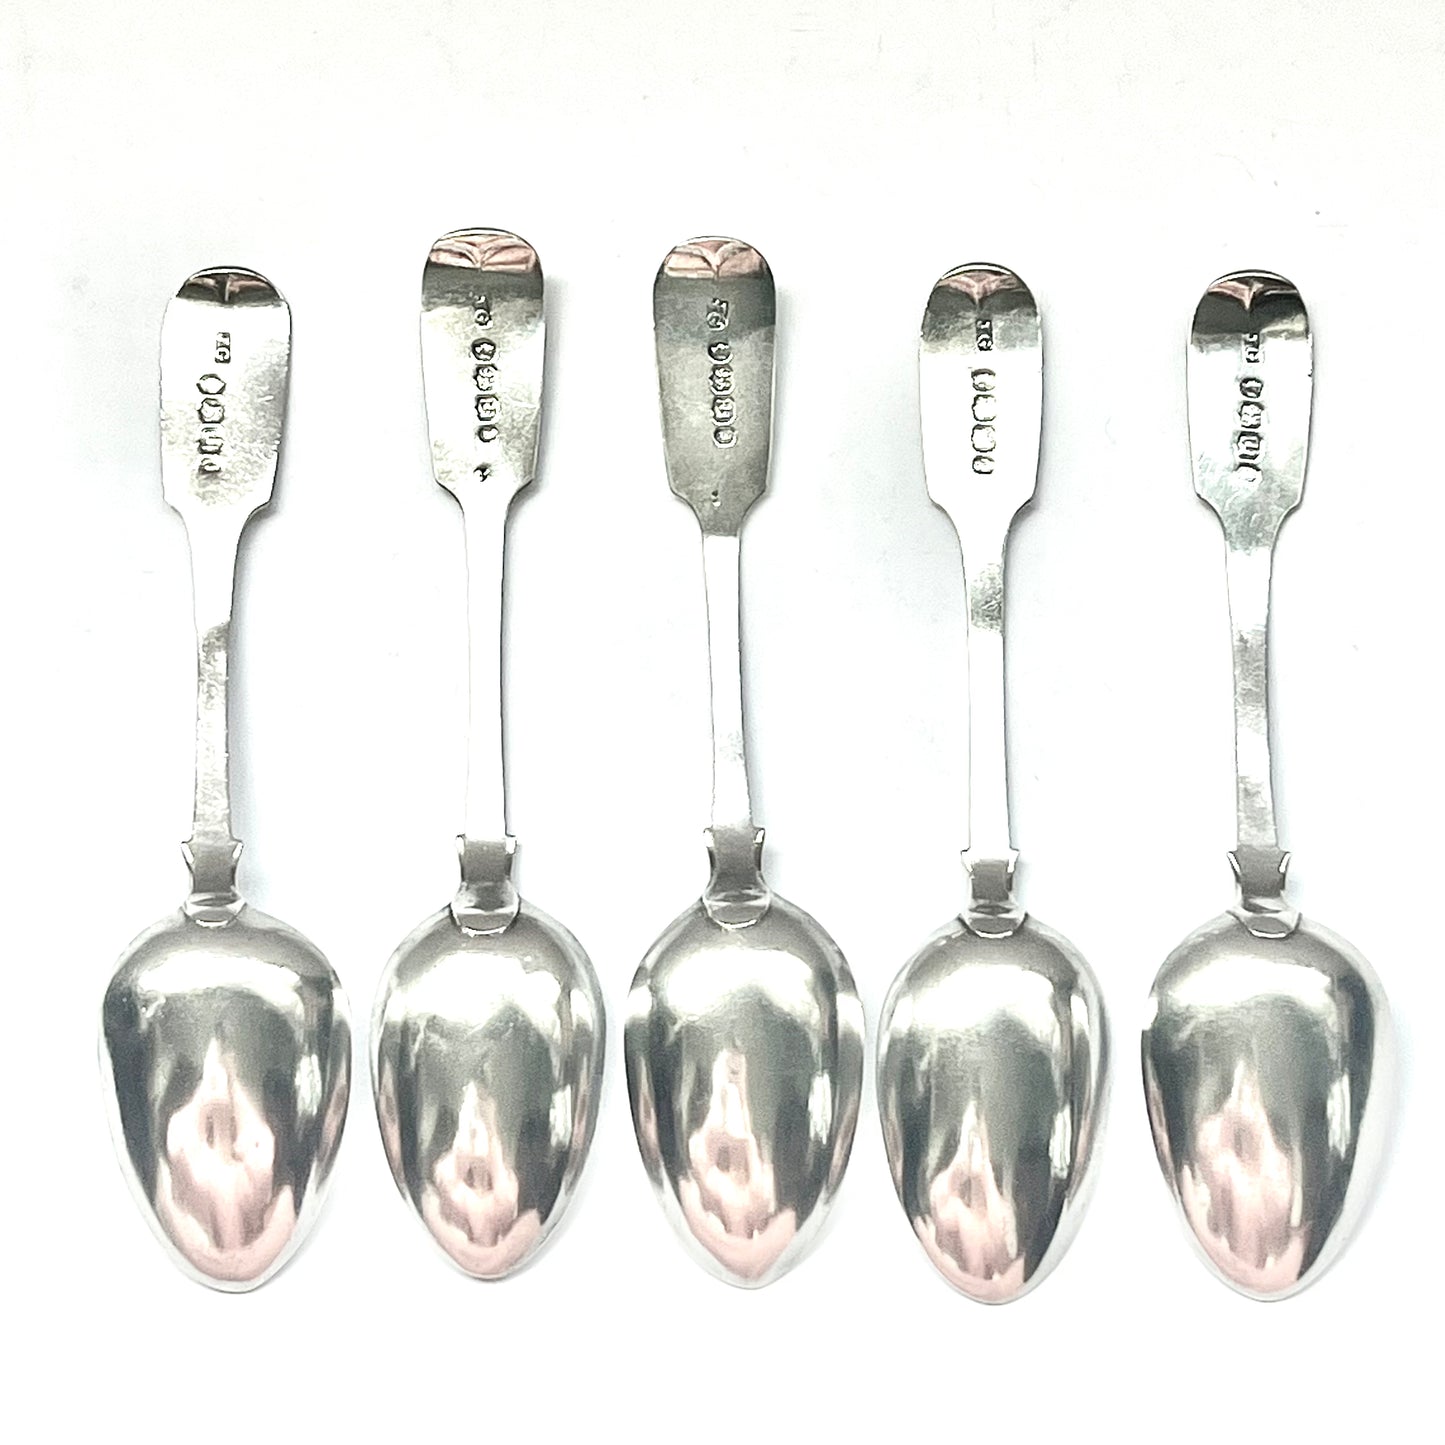 5 把维多利亚早期英国省级银勺，带有约西亚·格雷戈里的标记，埃克塞特，1845 年